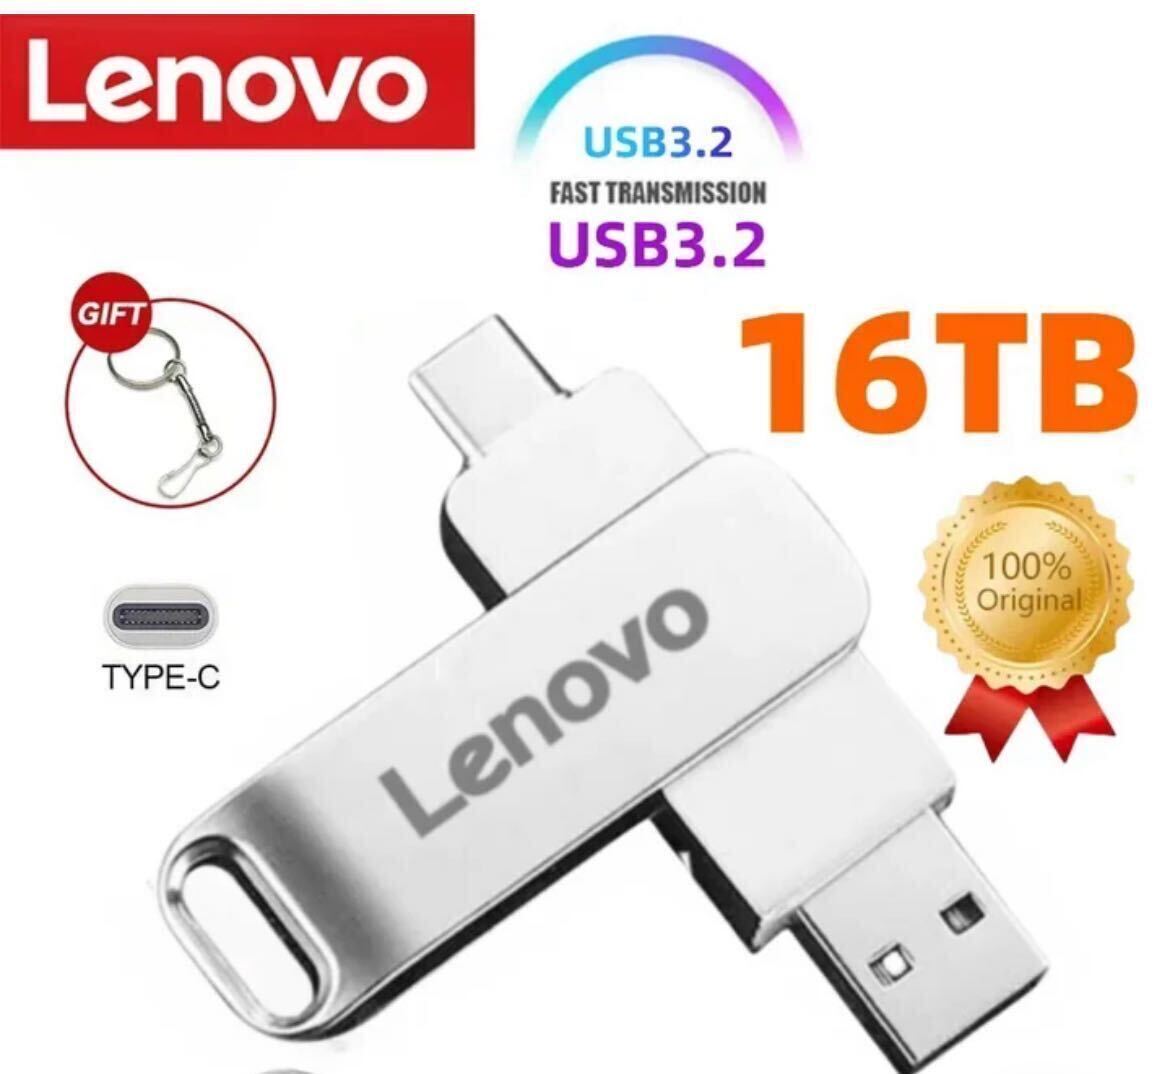 脅威の大容量 16TB Lenovo レノボ USBメモリー 高速転送,防水金属メモリ 2-IN-1 タイプC USBの画像1